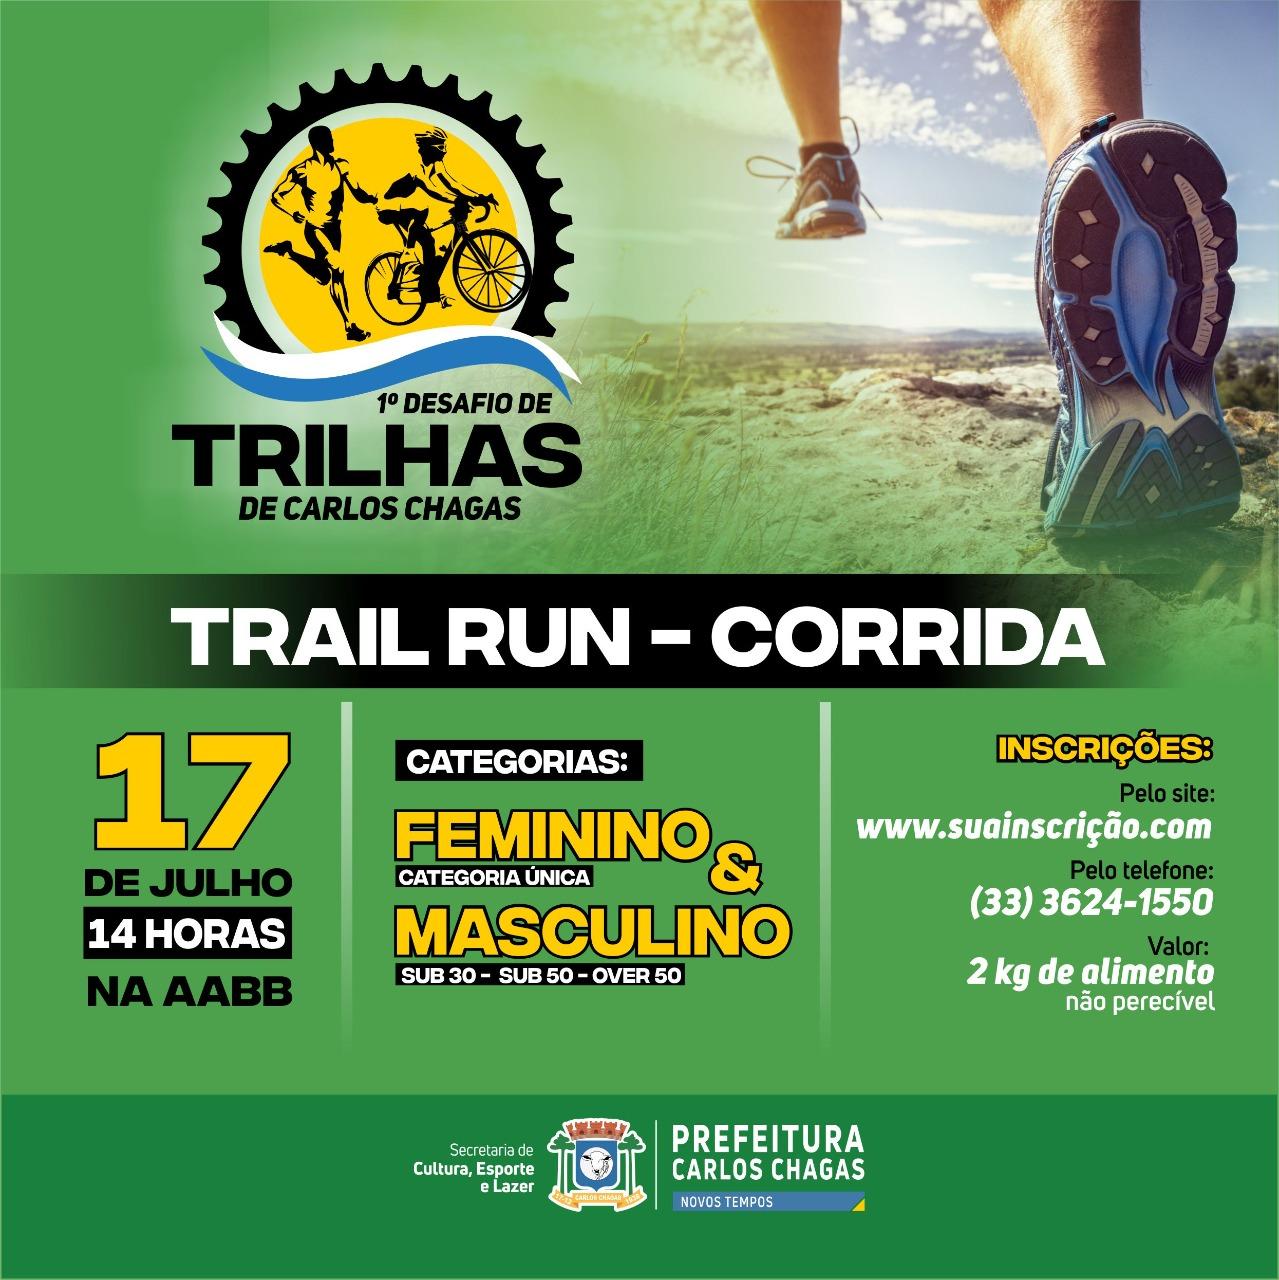 1° DESAFIO DE TRILHAS DE CARLOS CHAGAS - MG (TRAIL RUN)